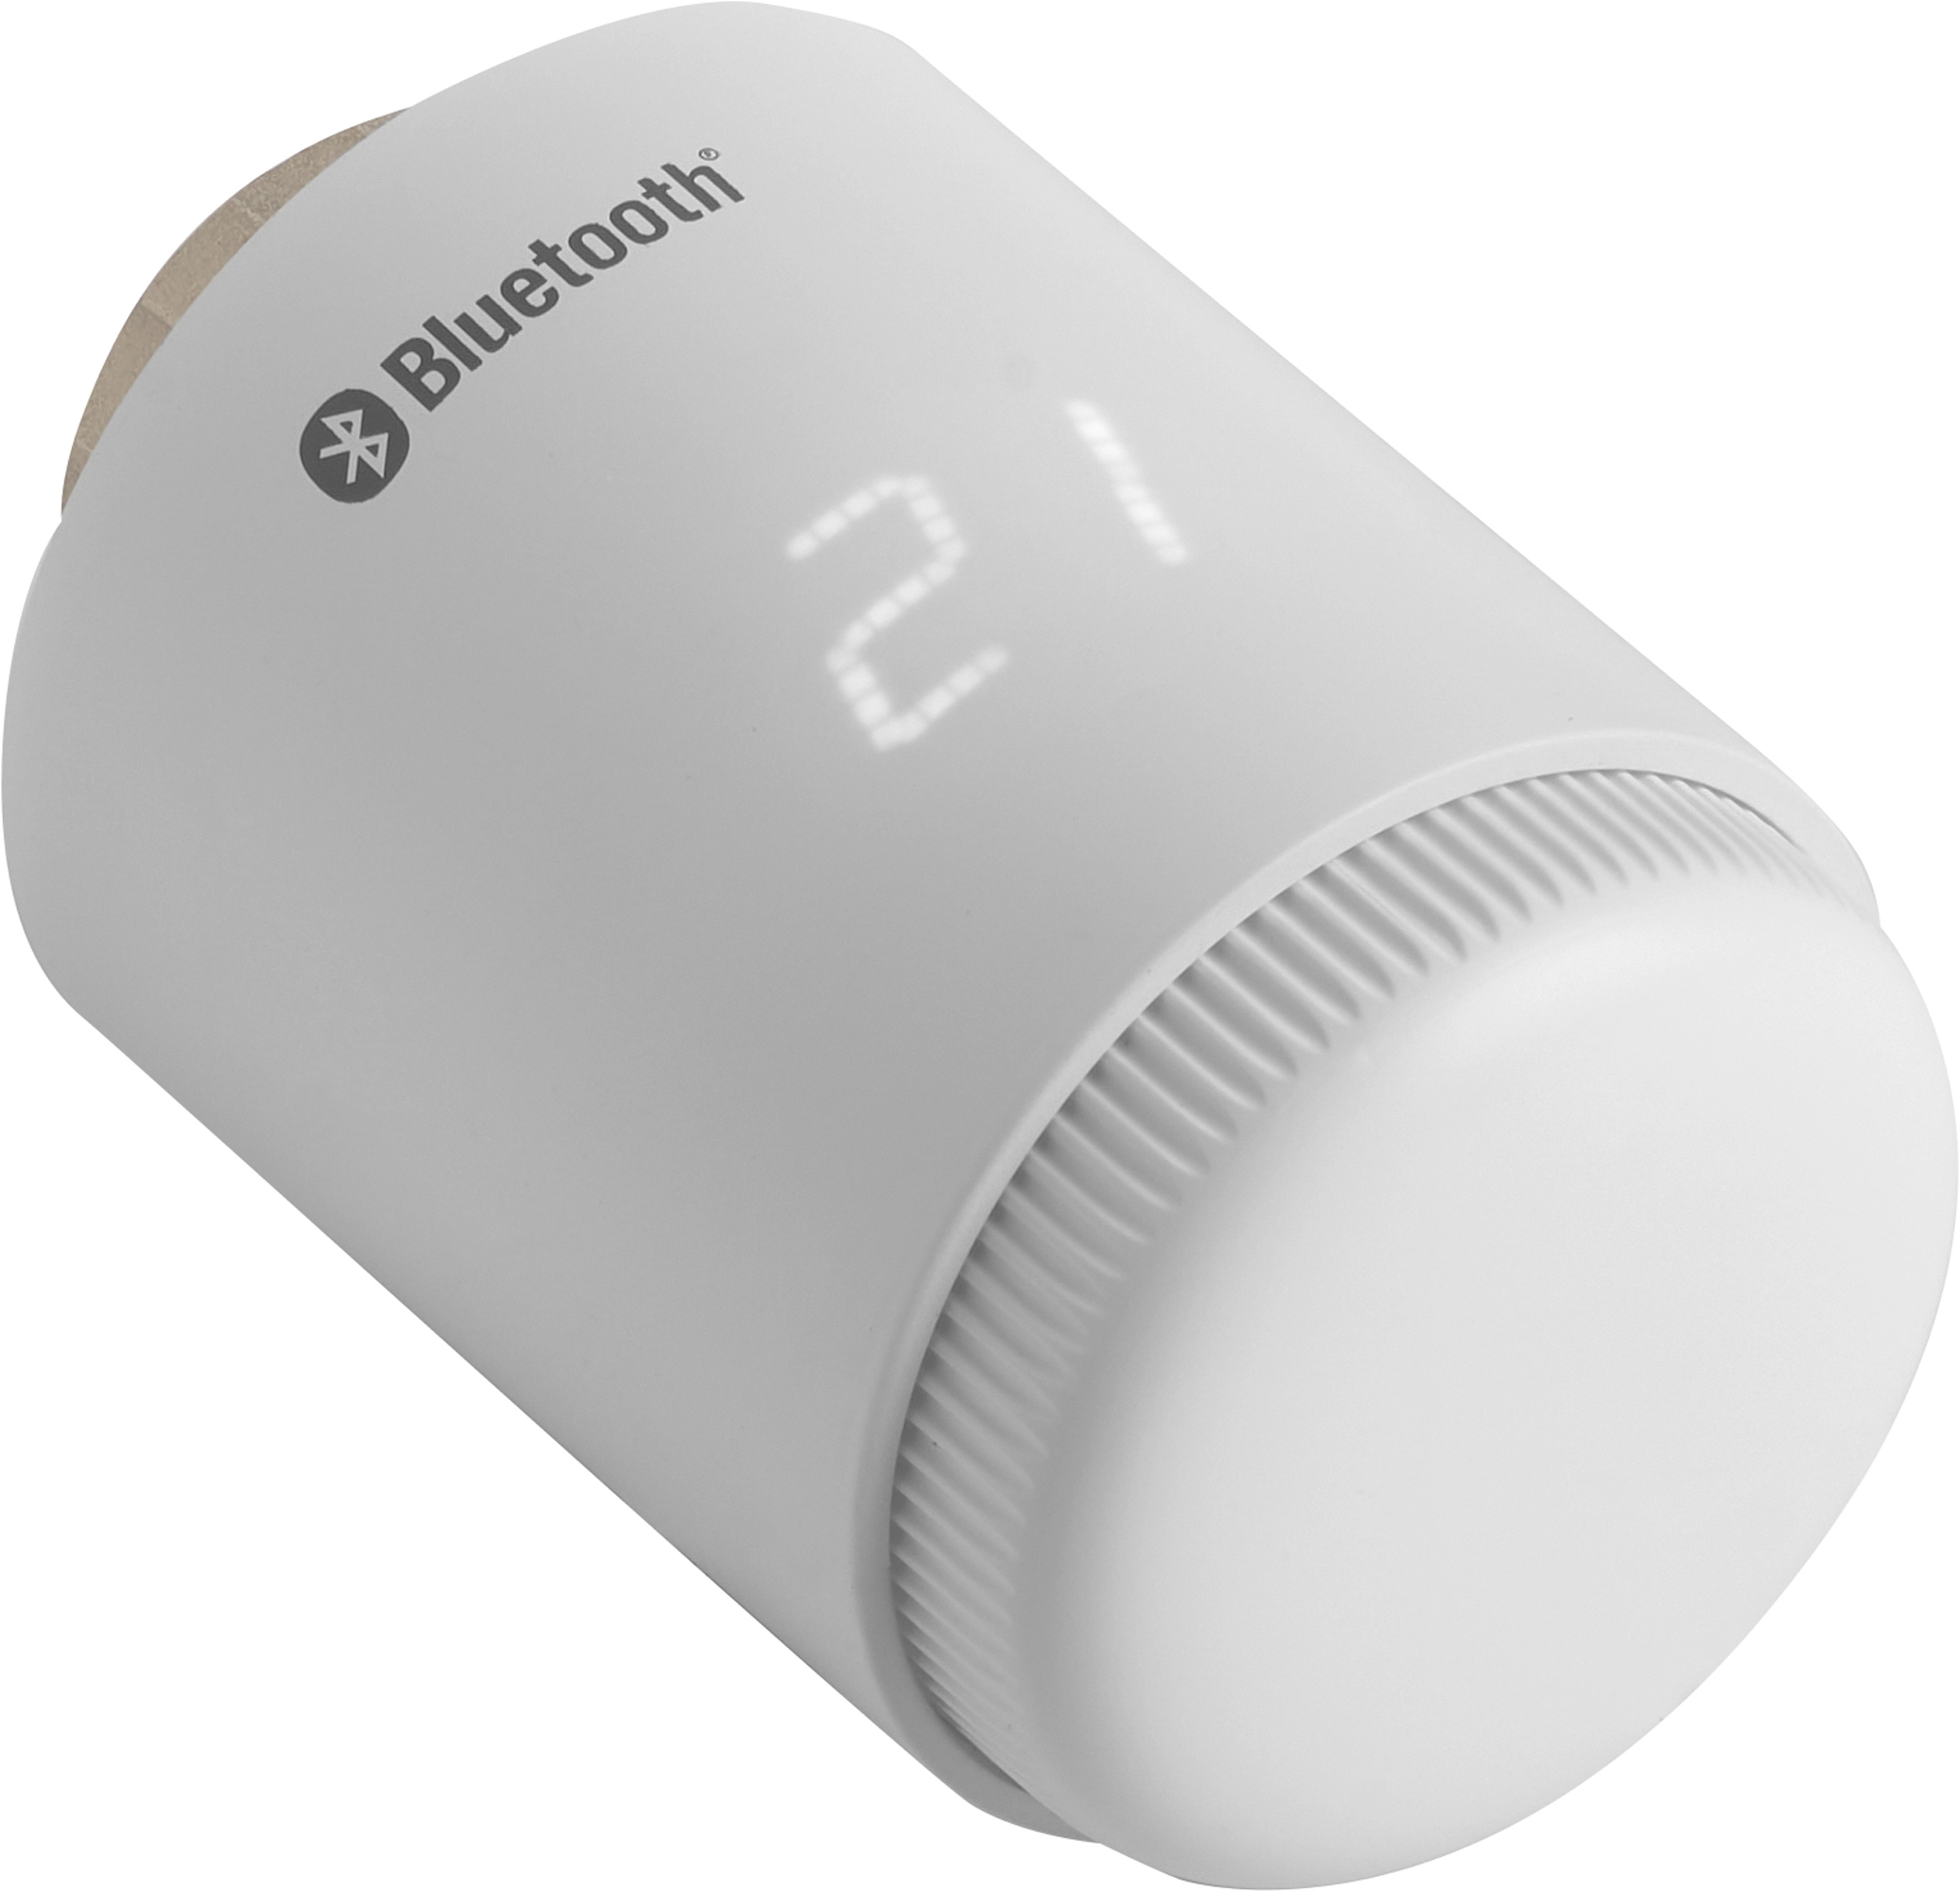 Elektrisches Heizkörper Thermostat TRV-607 Bluetooth Weiß kaufen bei OBI